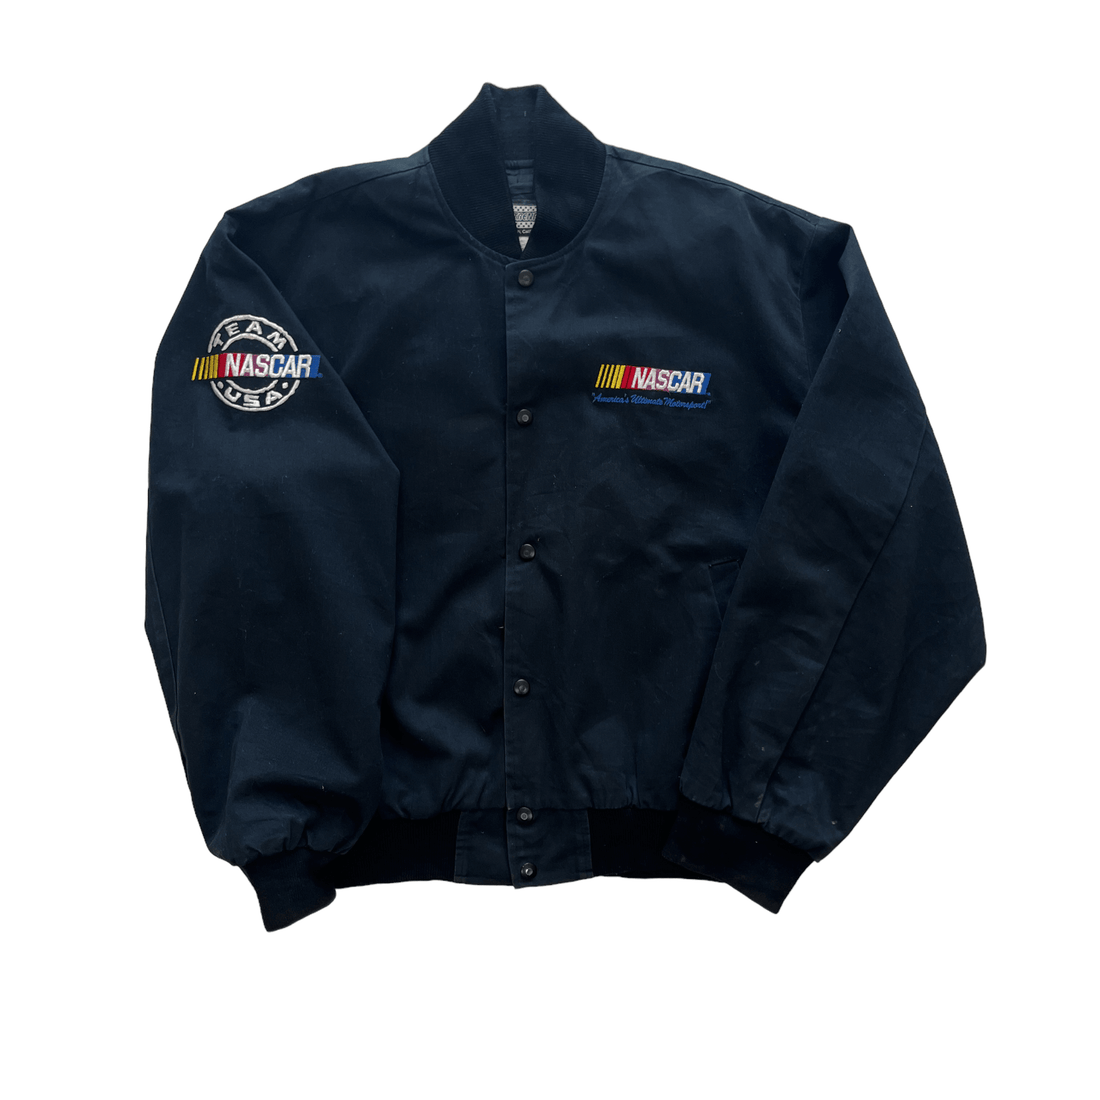 Vintage Black NASCAR Racing Jacket - Large - The Streetwear Studio